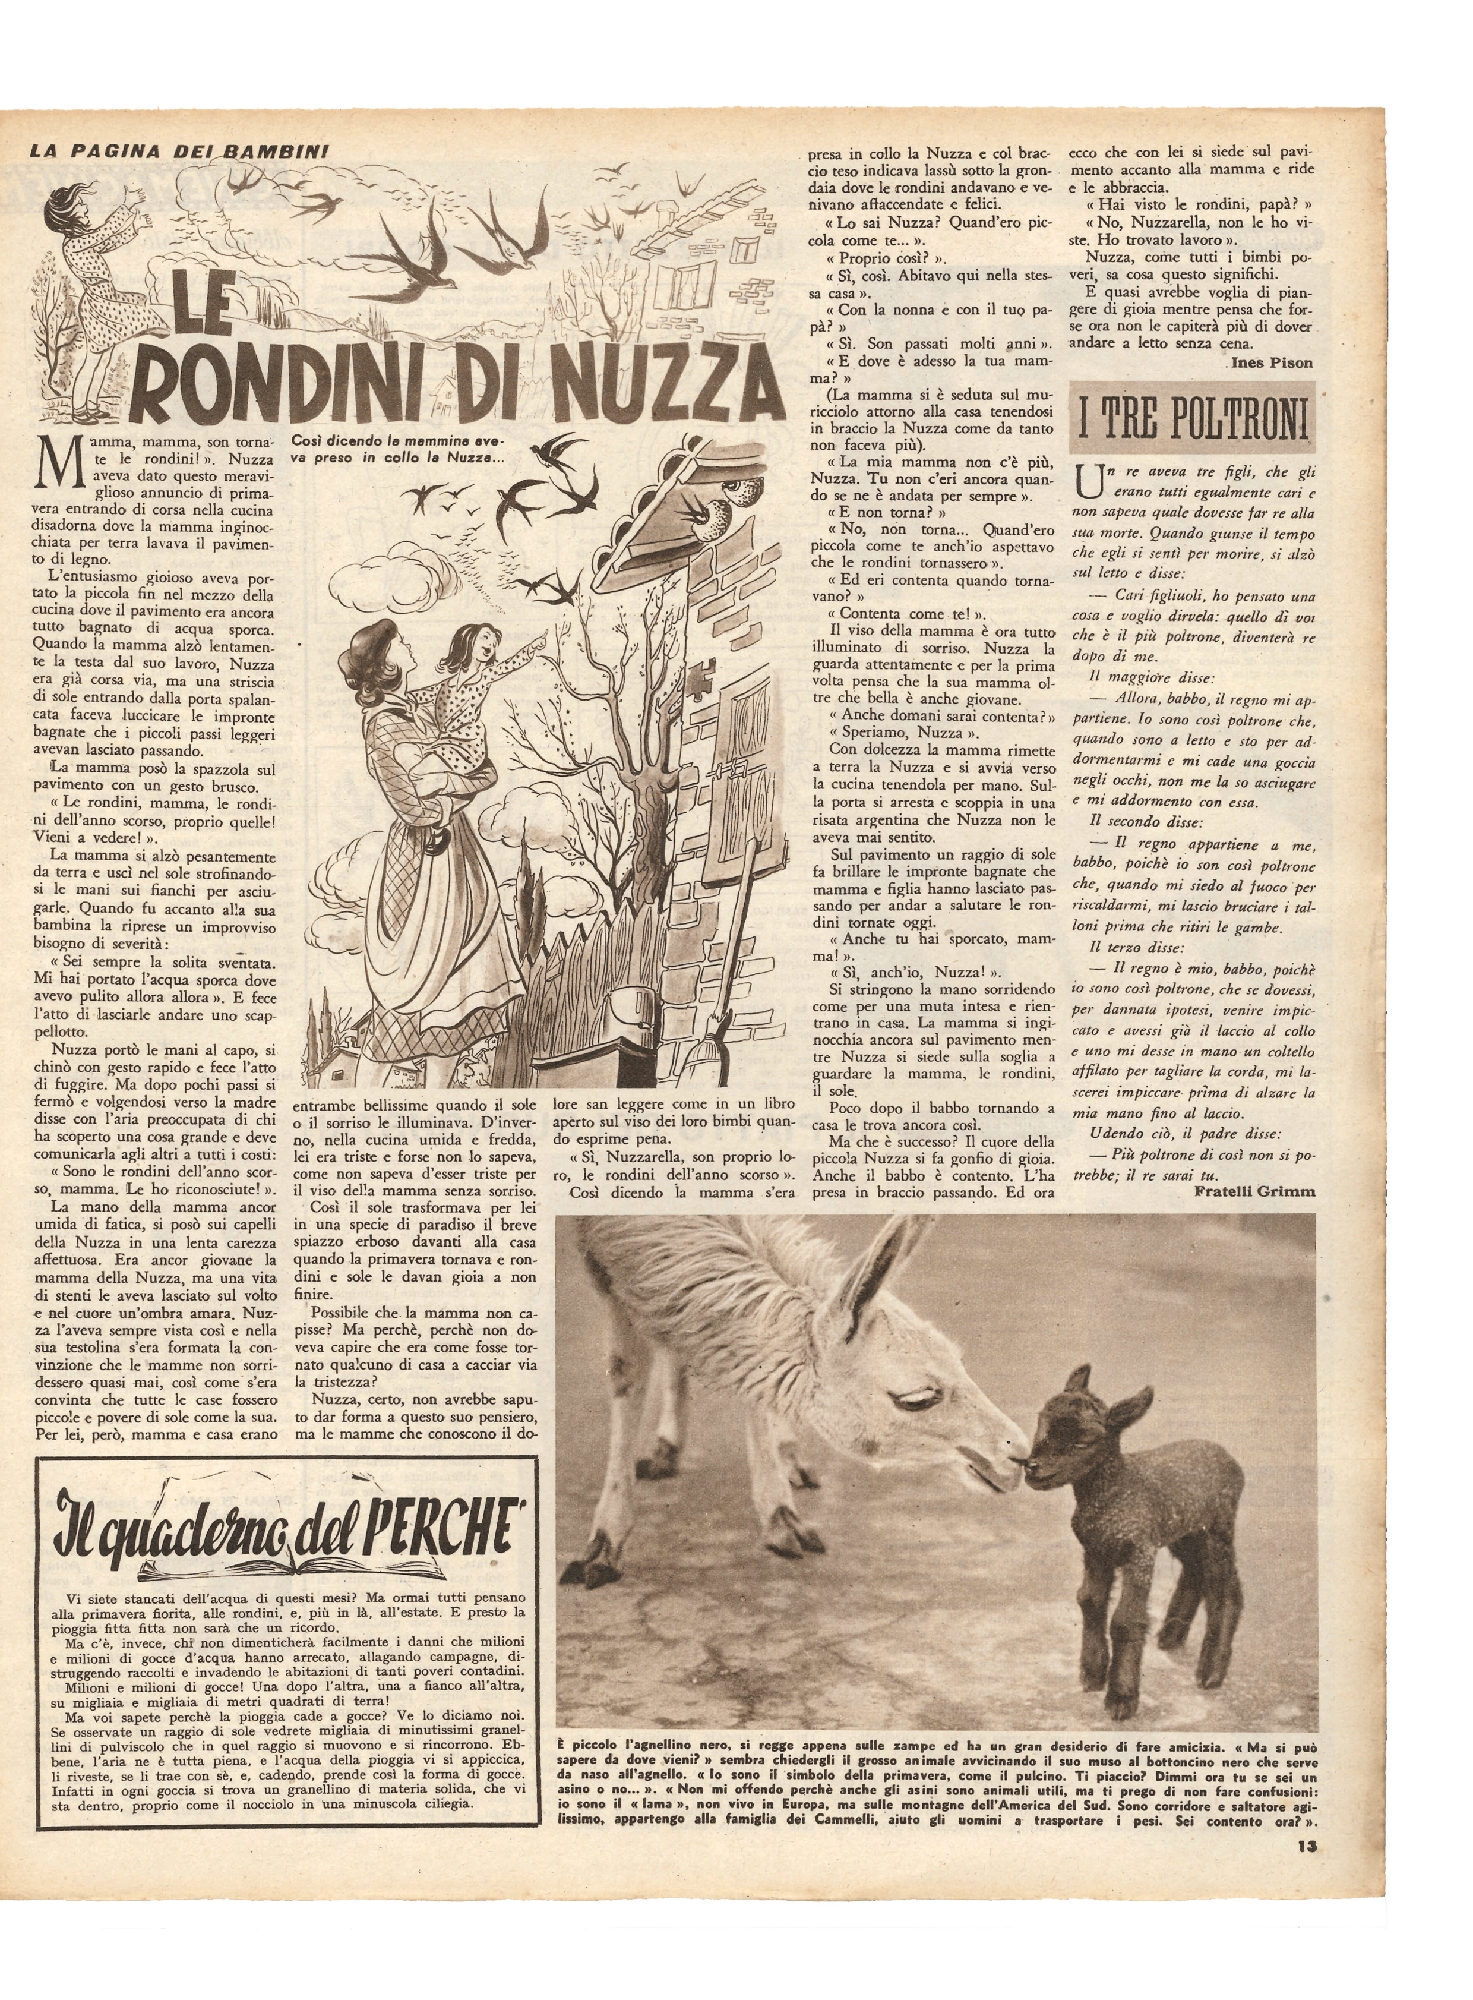 Foto: Crollano le scuole a Roma e Milano/Il successo dei fumetti/I consultori per l'infanzia in URSS